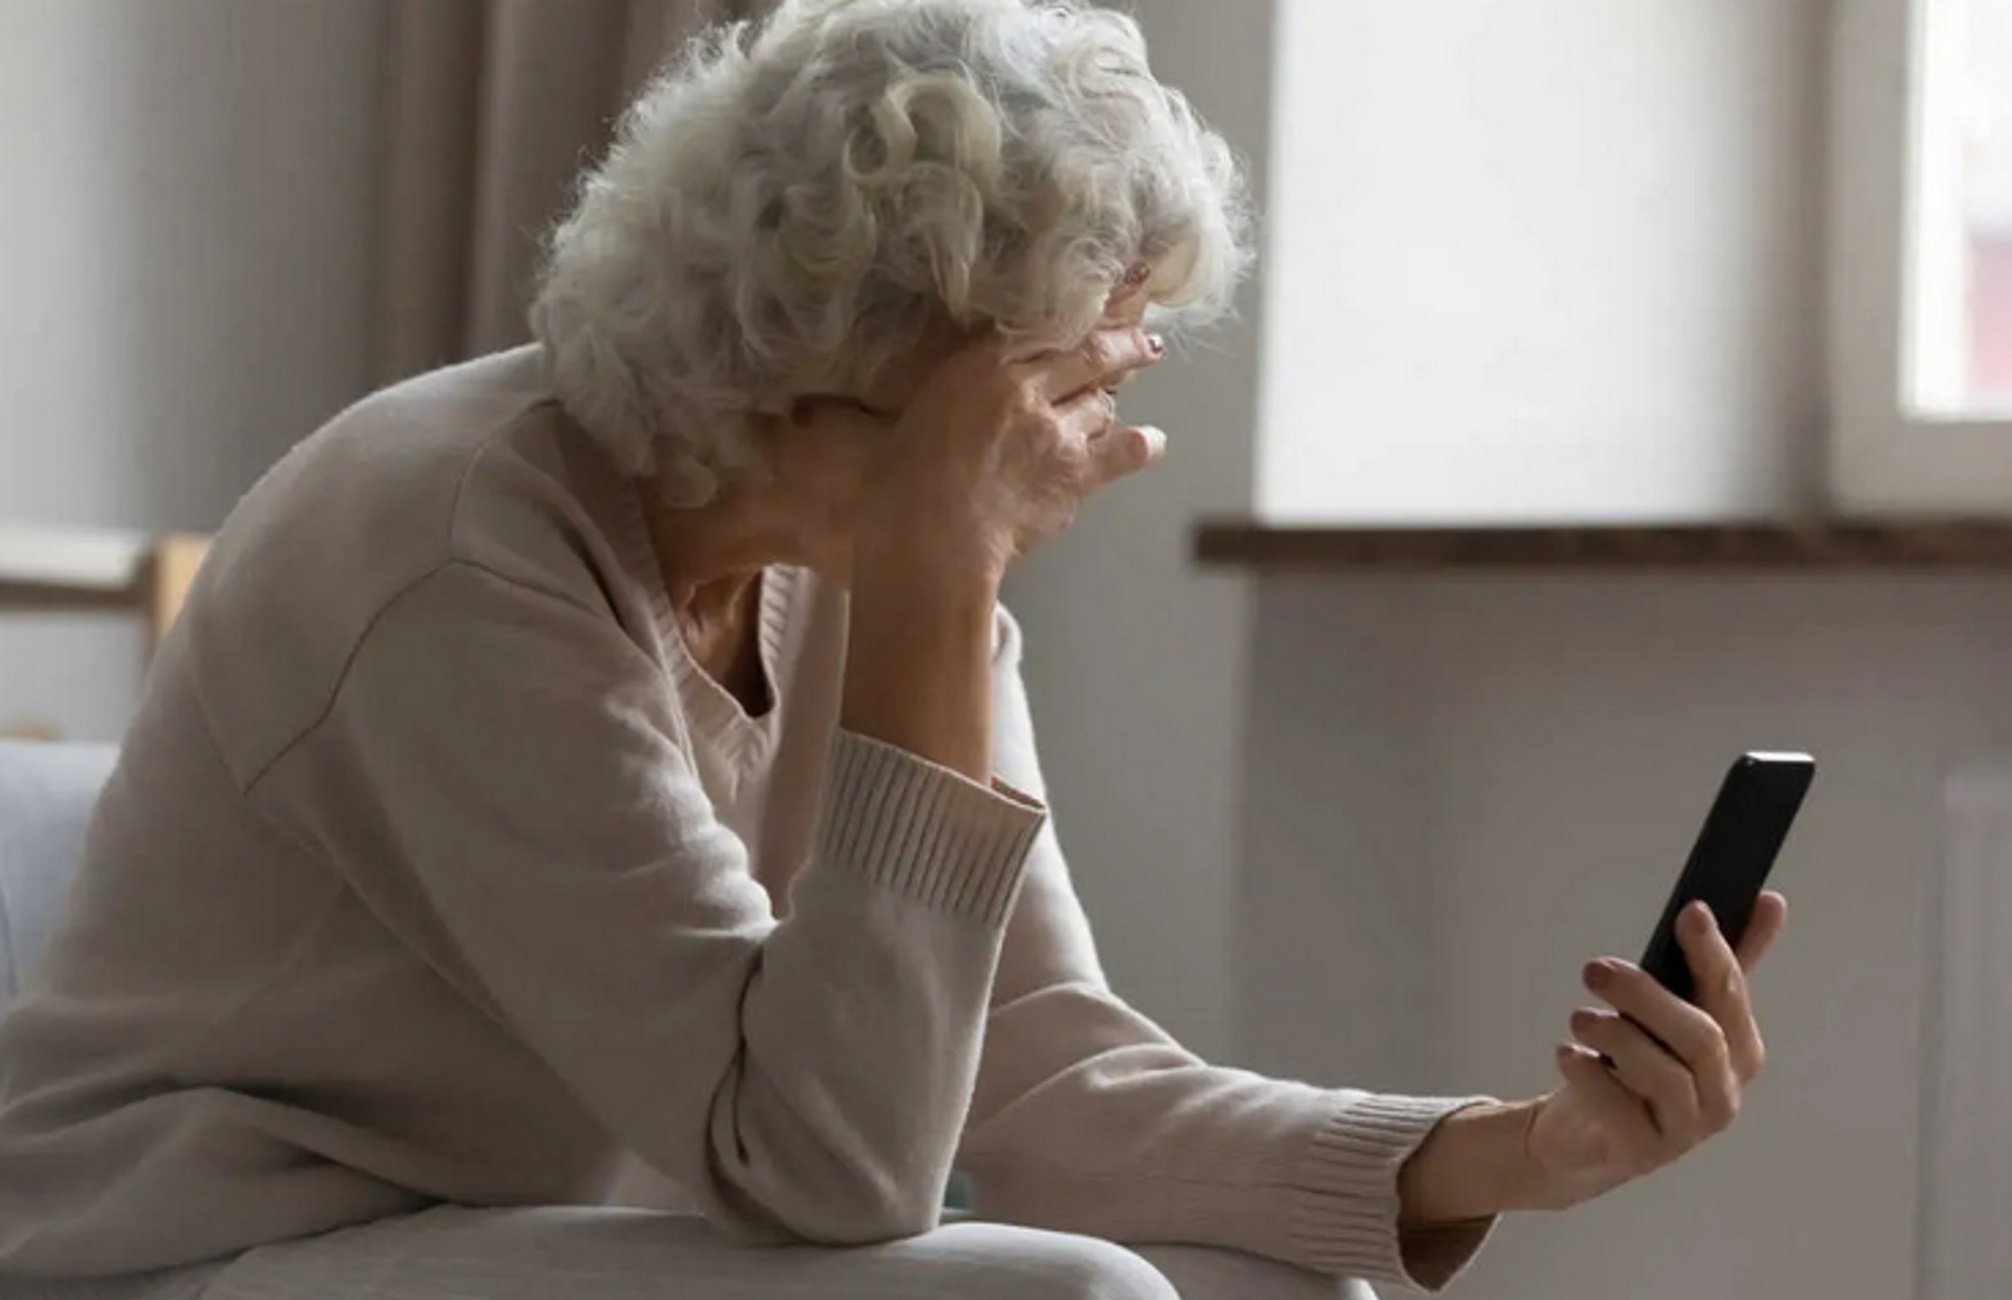 Λαμία: Τηλεφωνική απάτη με γιαγιά να παραμένει ψύχραιμη και να «στολίζει» τους επίδοξους δράστες